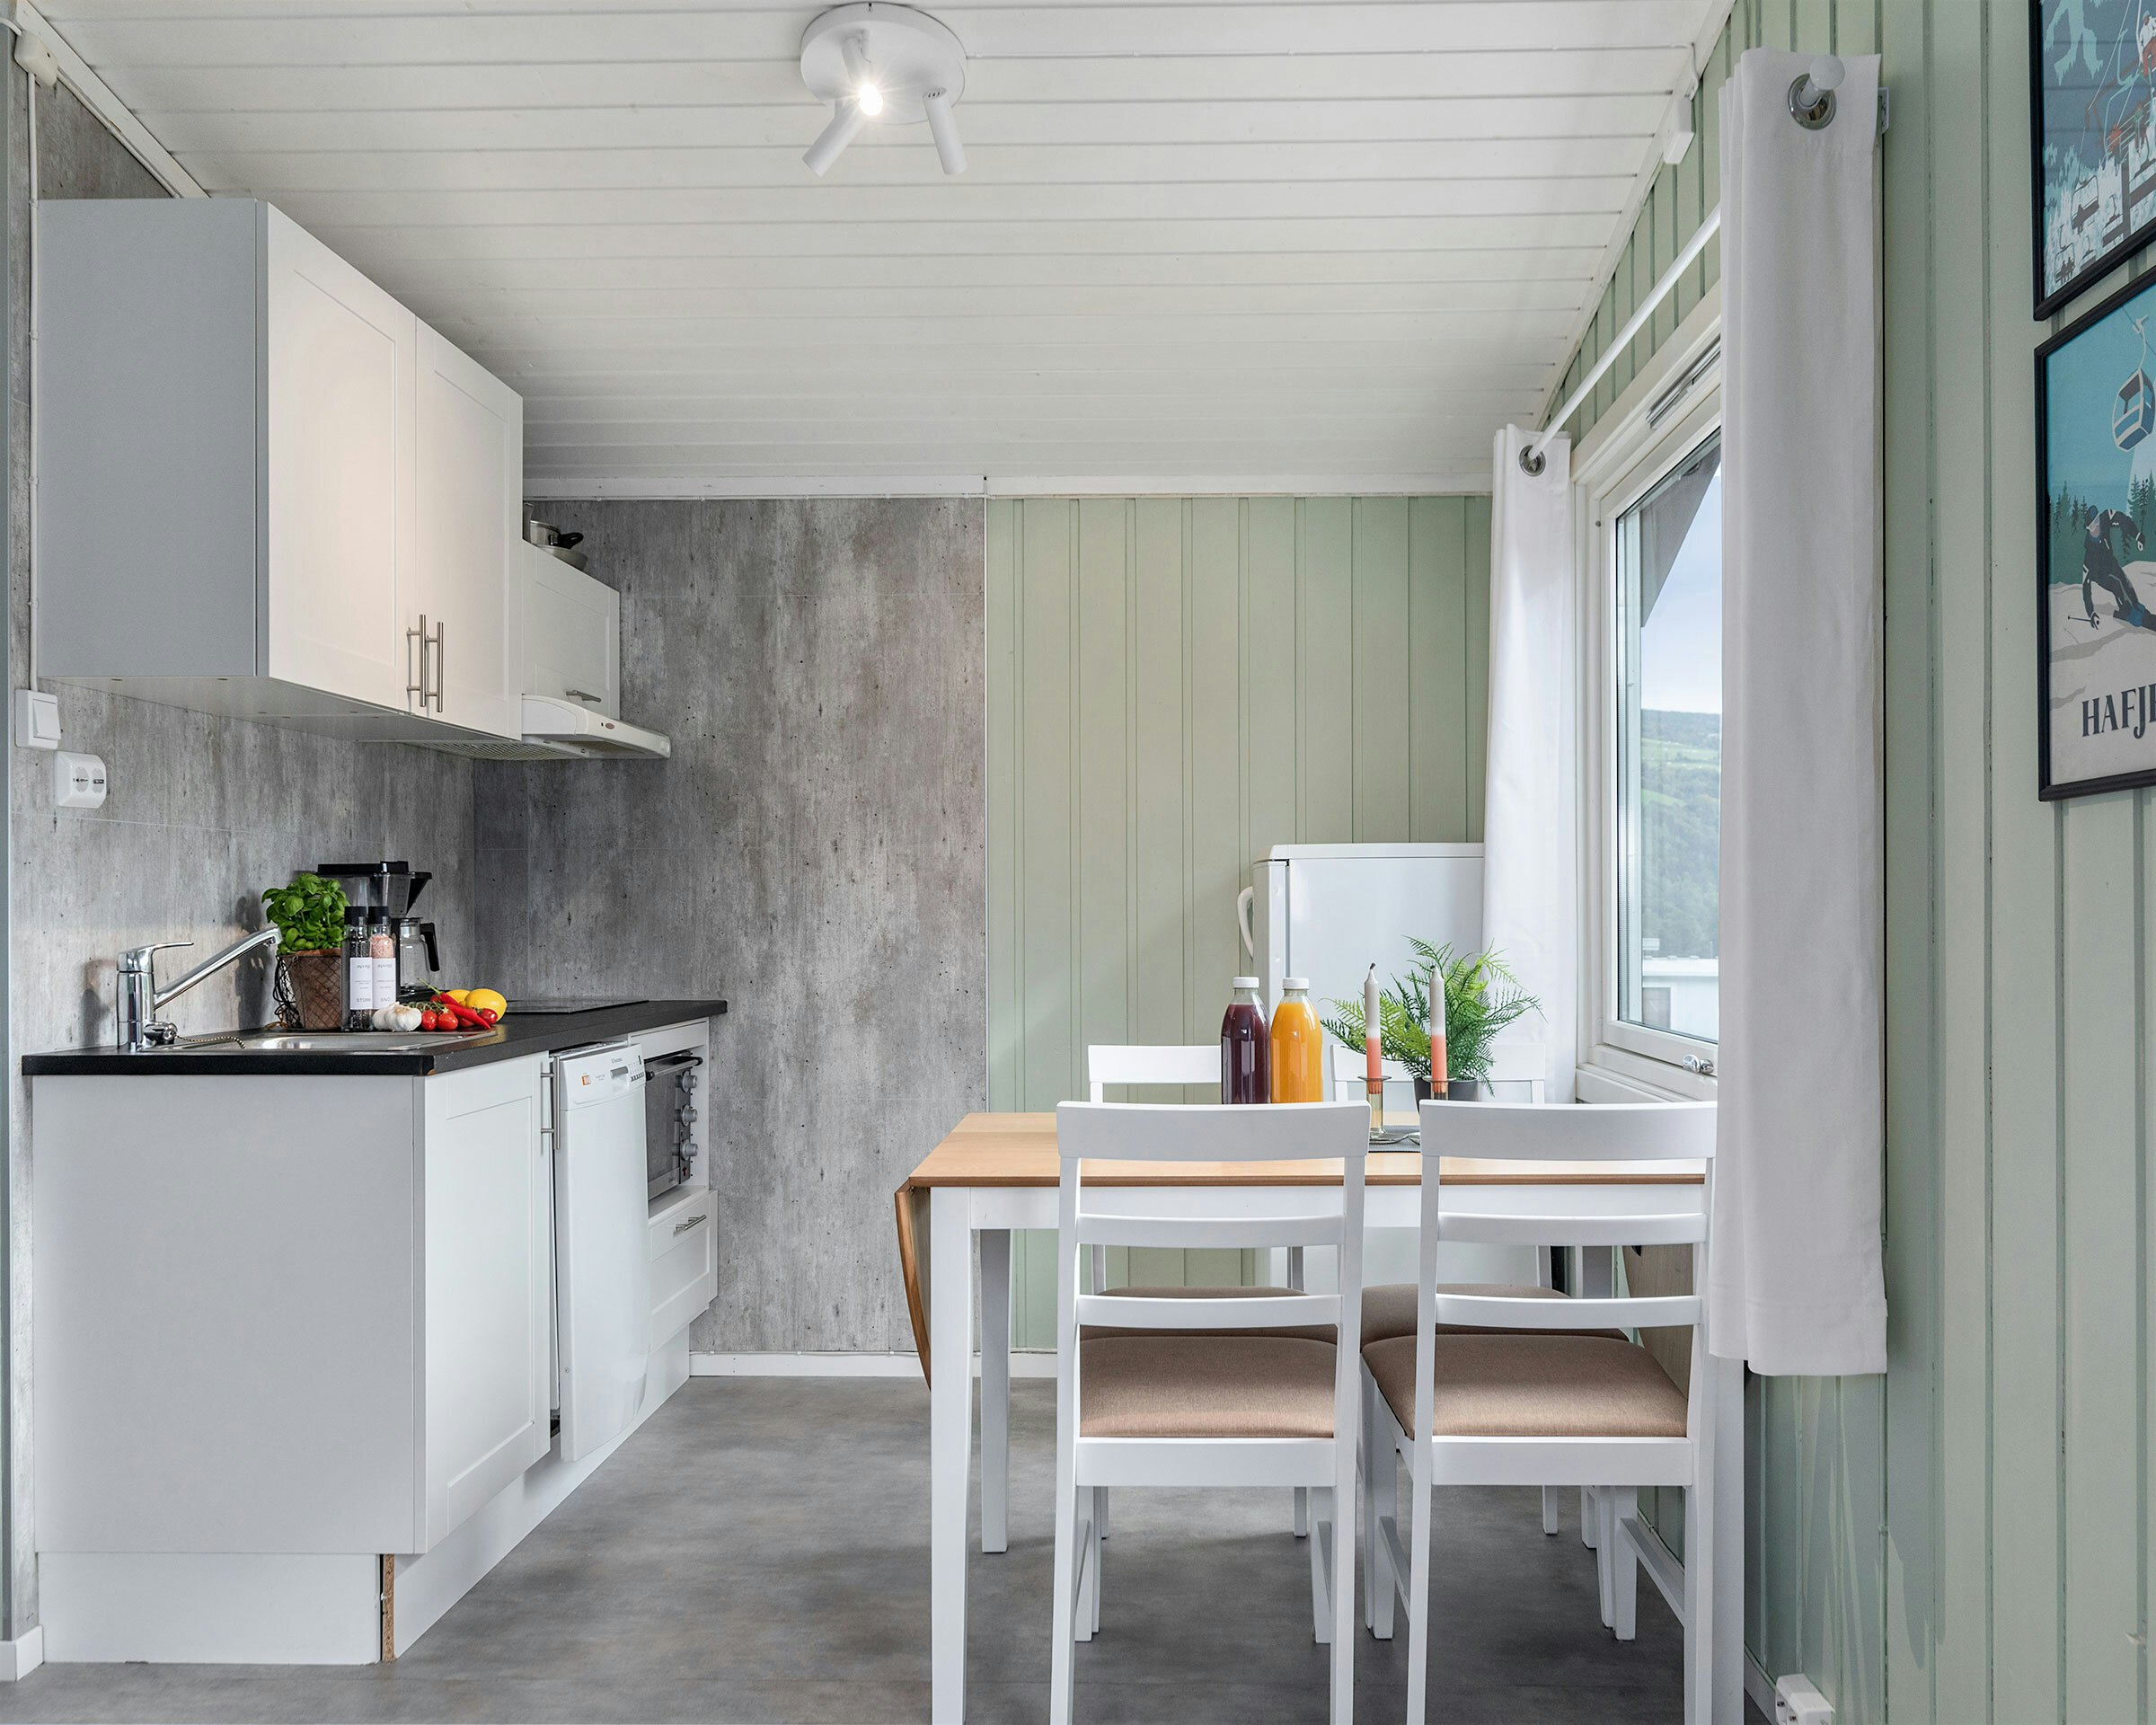 Lyst kjøkken med lysegrønne vegger, grønnsaker på kjøkkenbenken, spisebord med plante, lysestaker og juice.